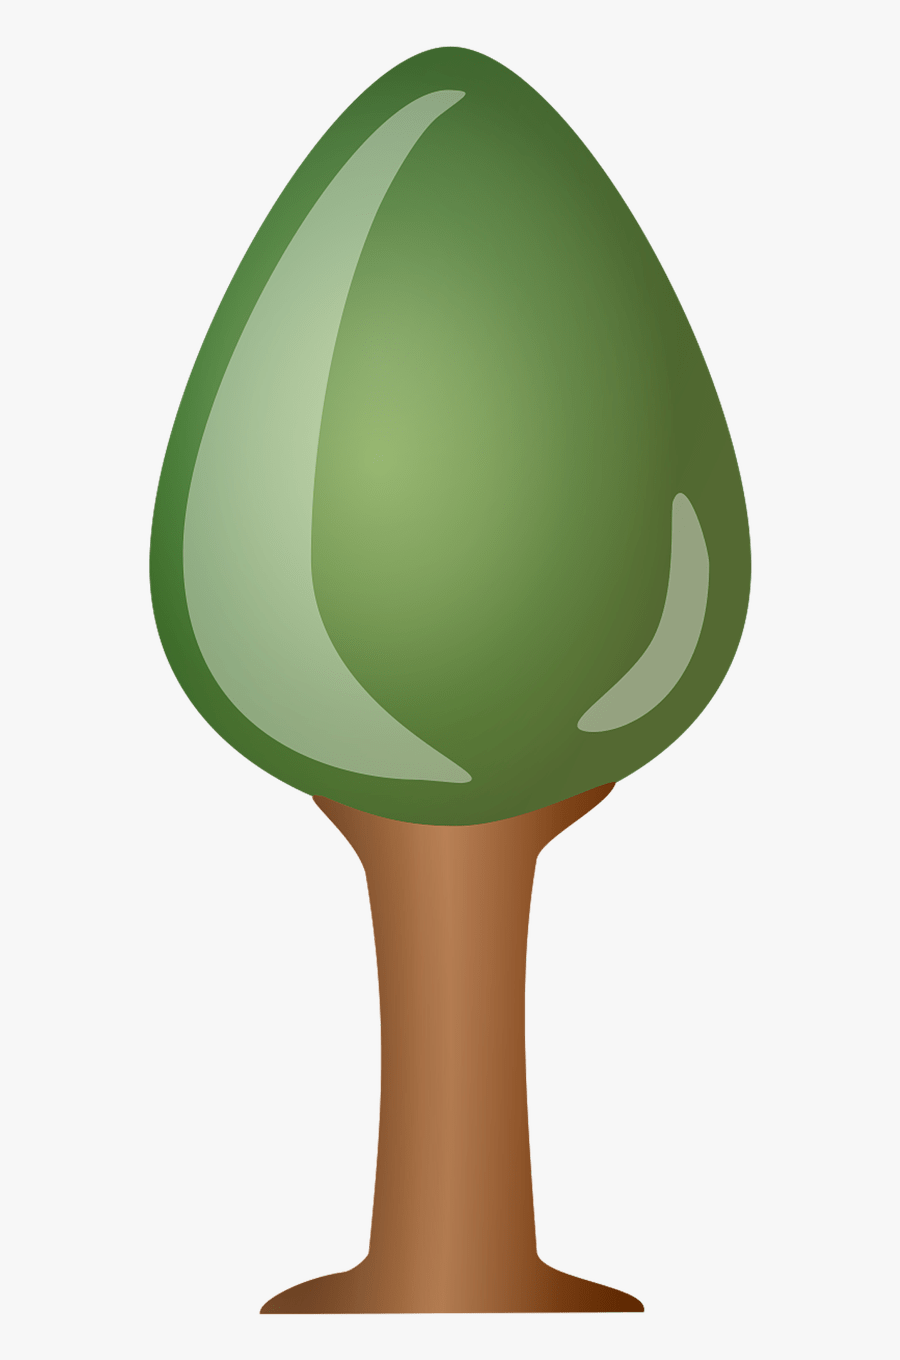 Tree Pine Clipart - รูป การ์ตูน พืช Png, Transparent Clipart